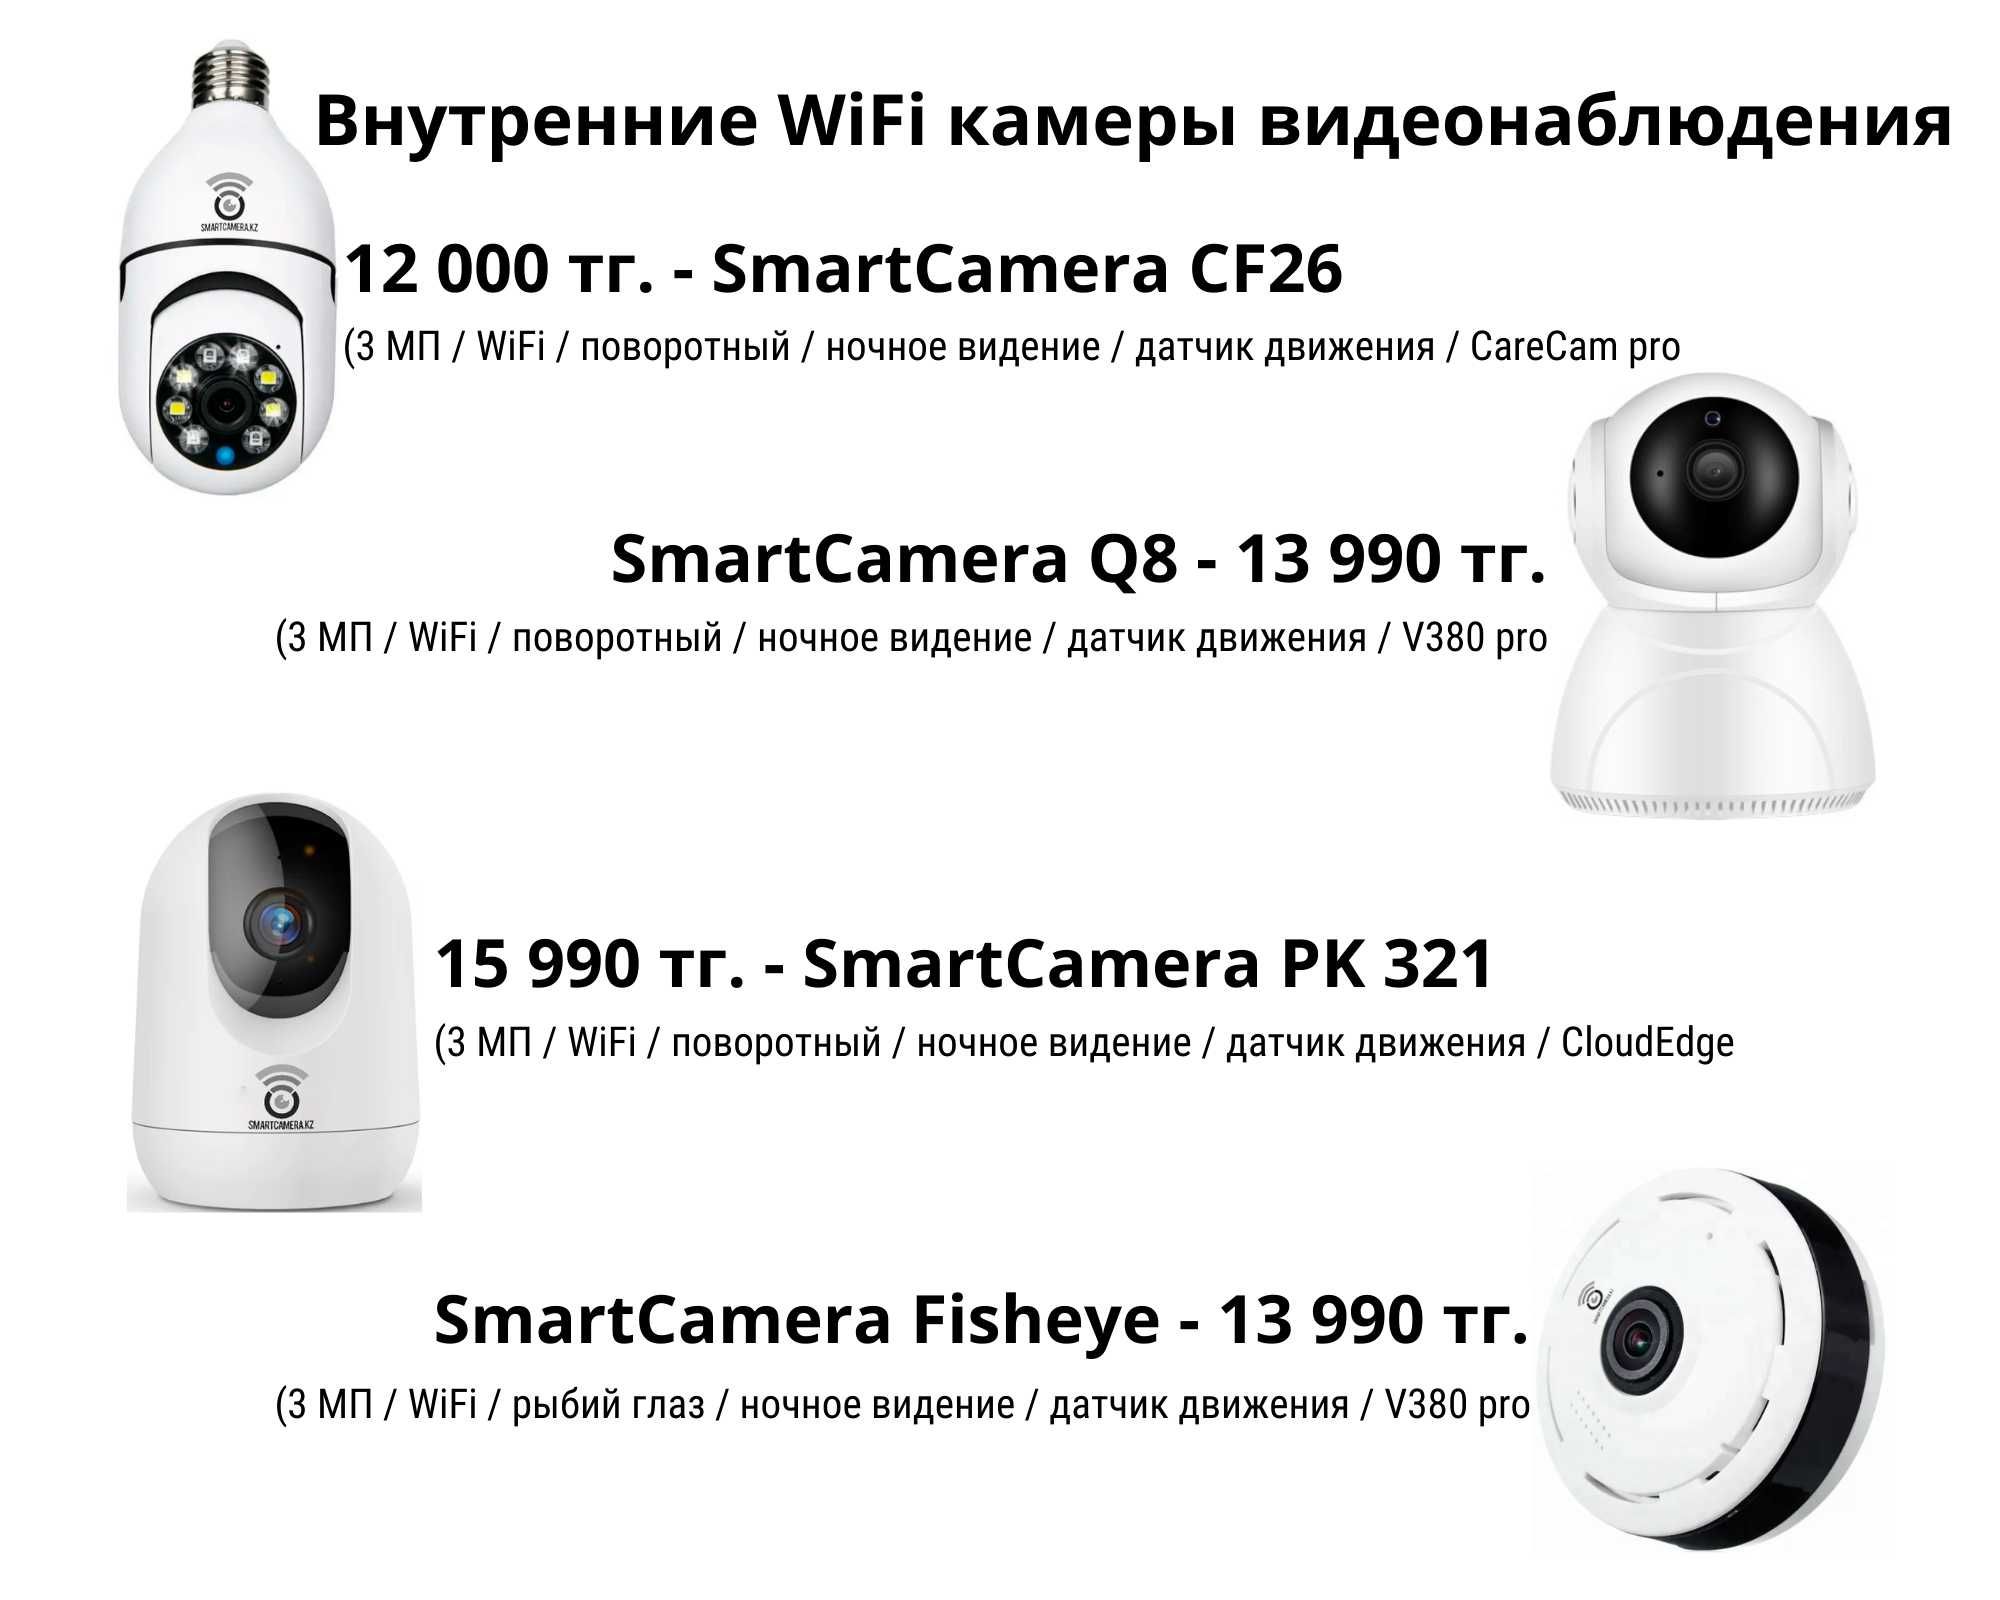 4G и WiFi камеры видеонаблюдения с доставкой